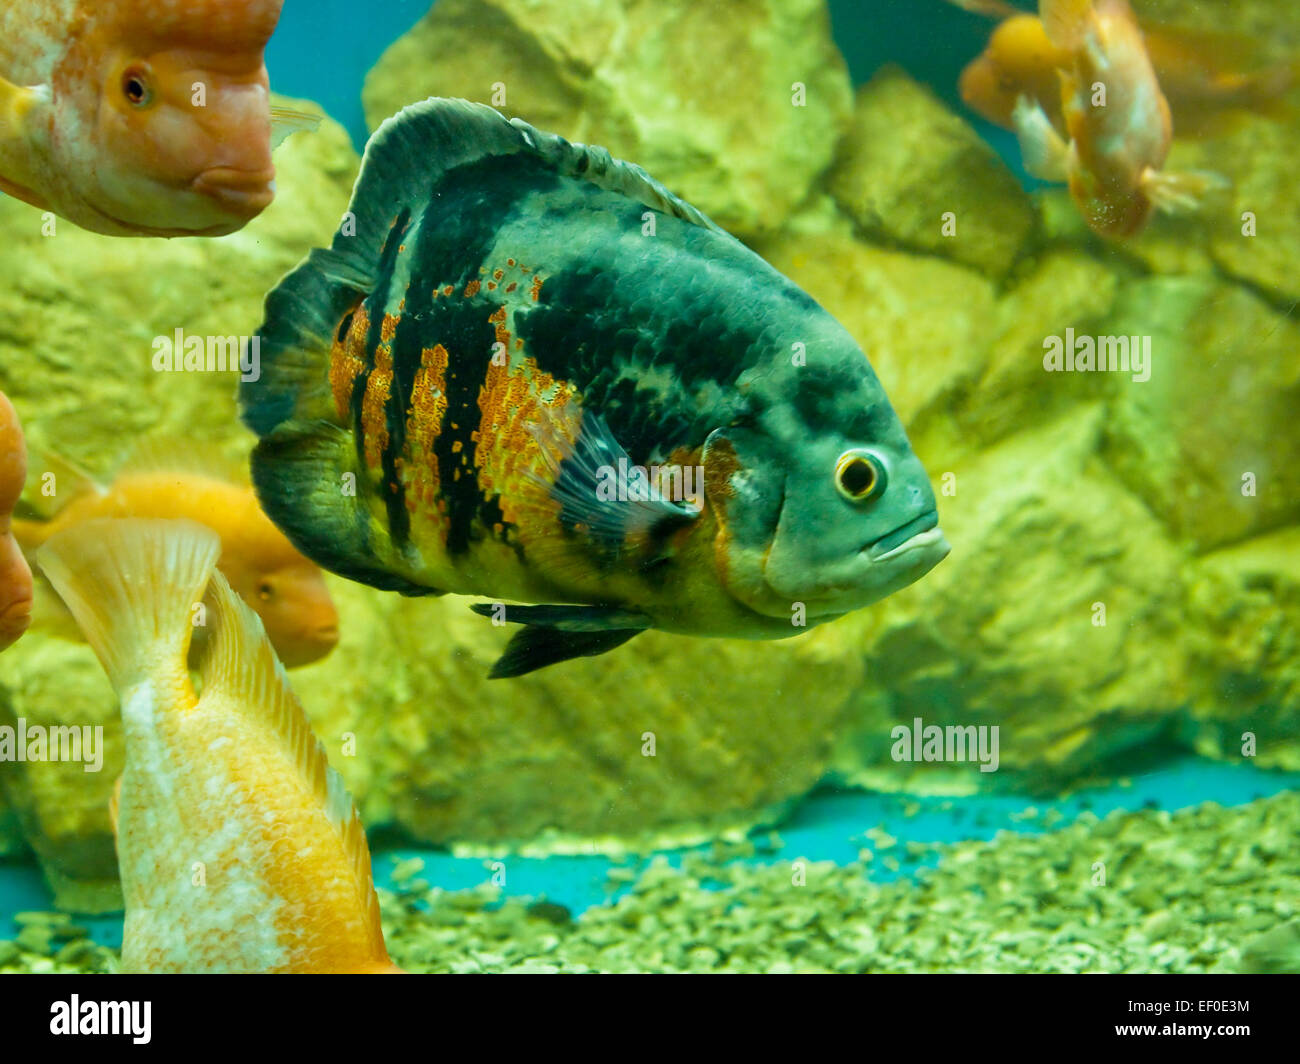 Tropical fish Astronotus ocellatus in aquarium. Stock Photo